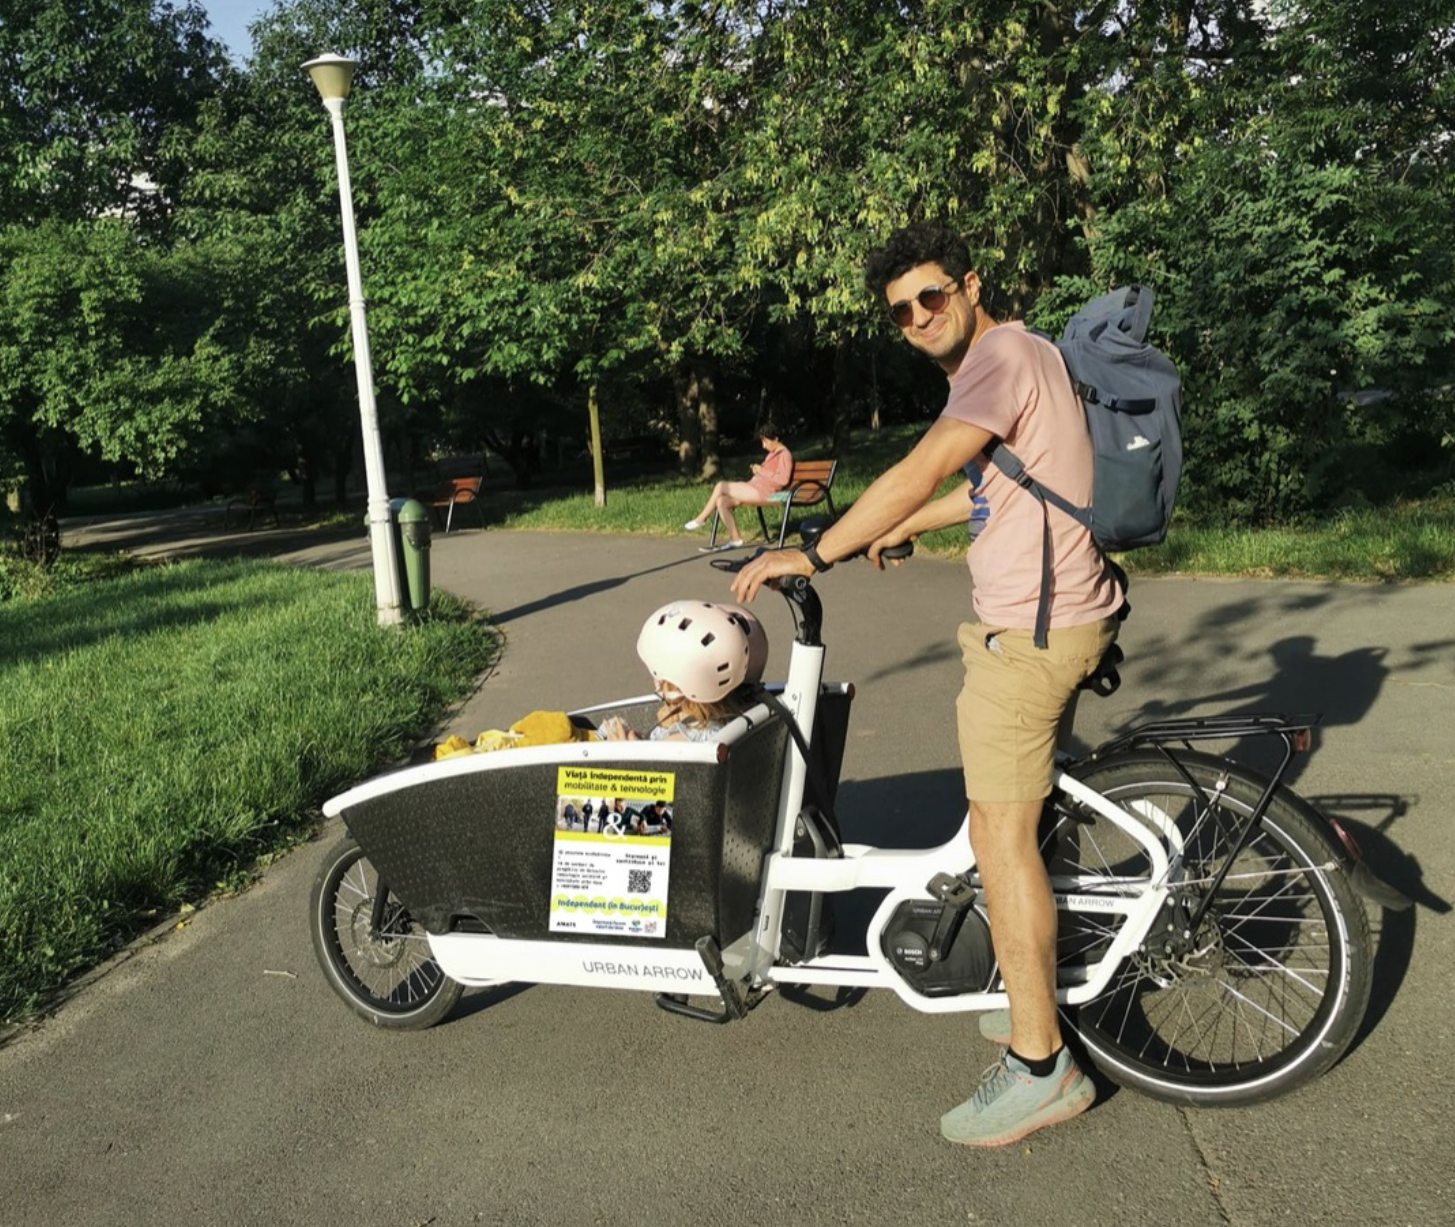 Alex Călin surprins în parc pe o bicicletă cargo în care își plimbă copilul care poartă o cască de protecție roz.